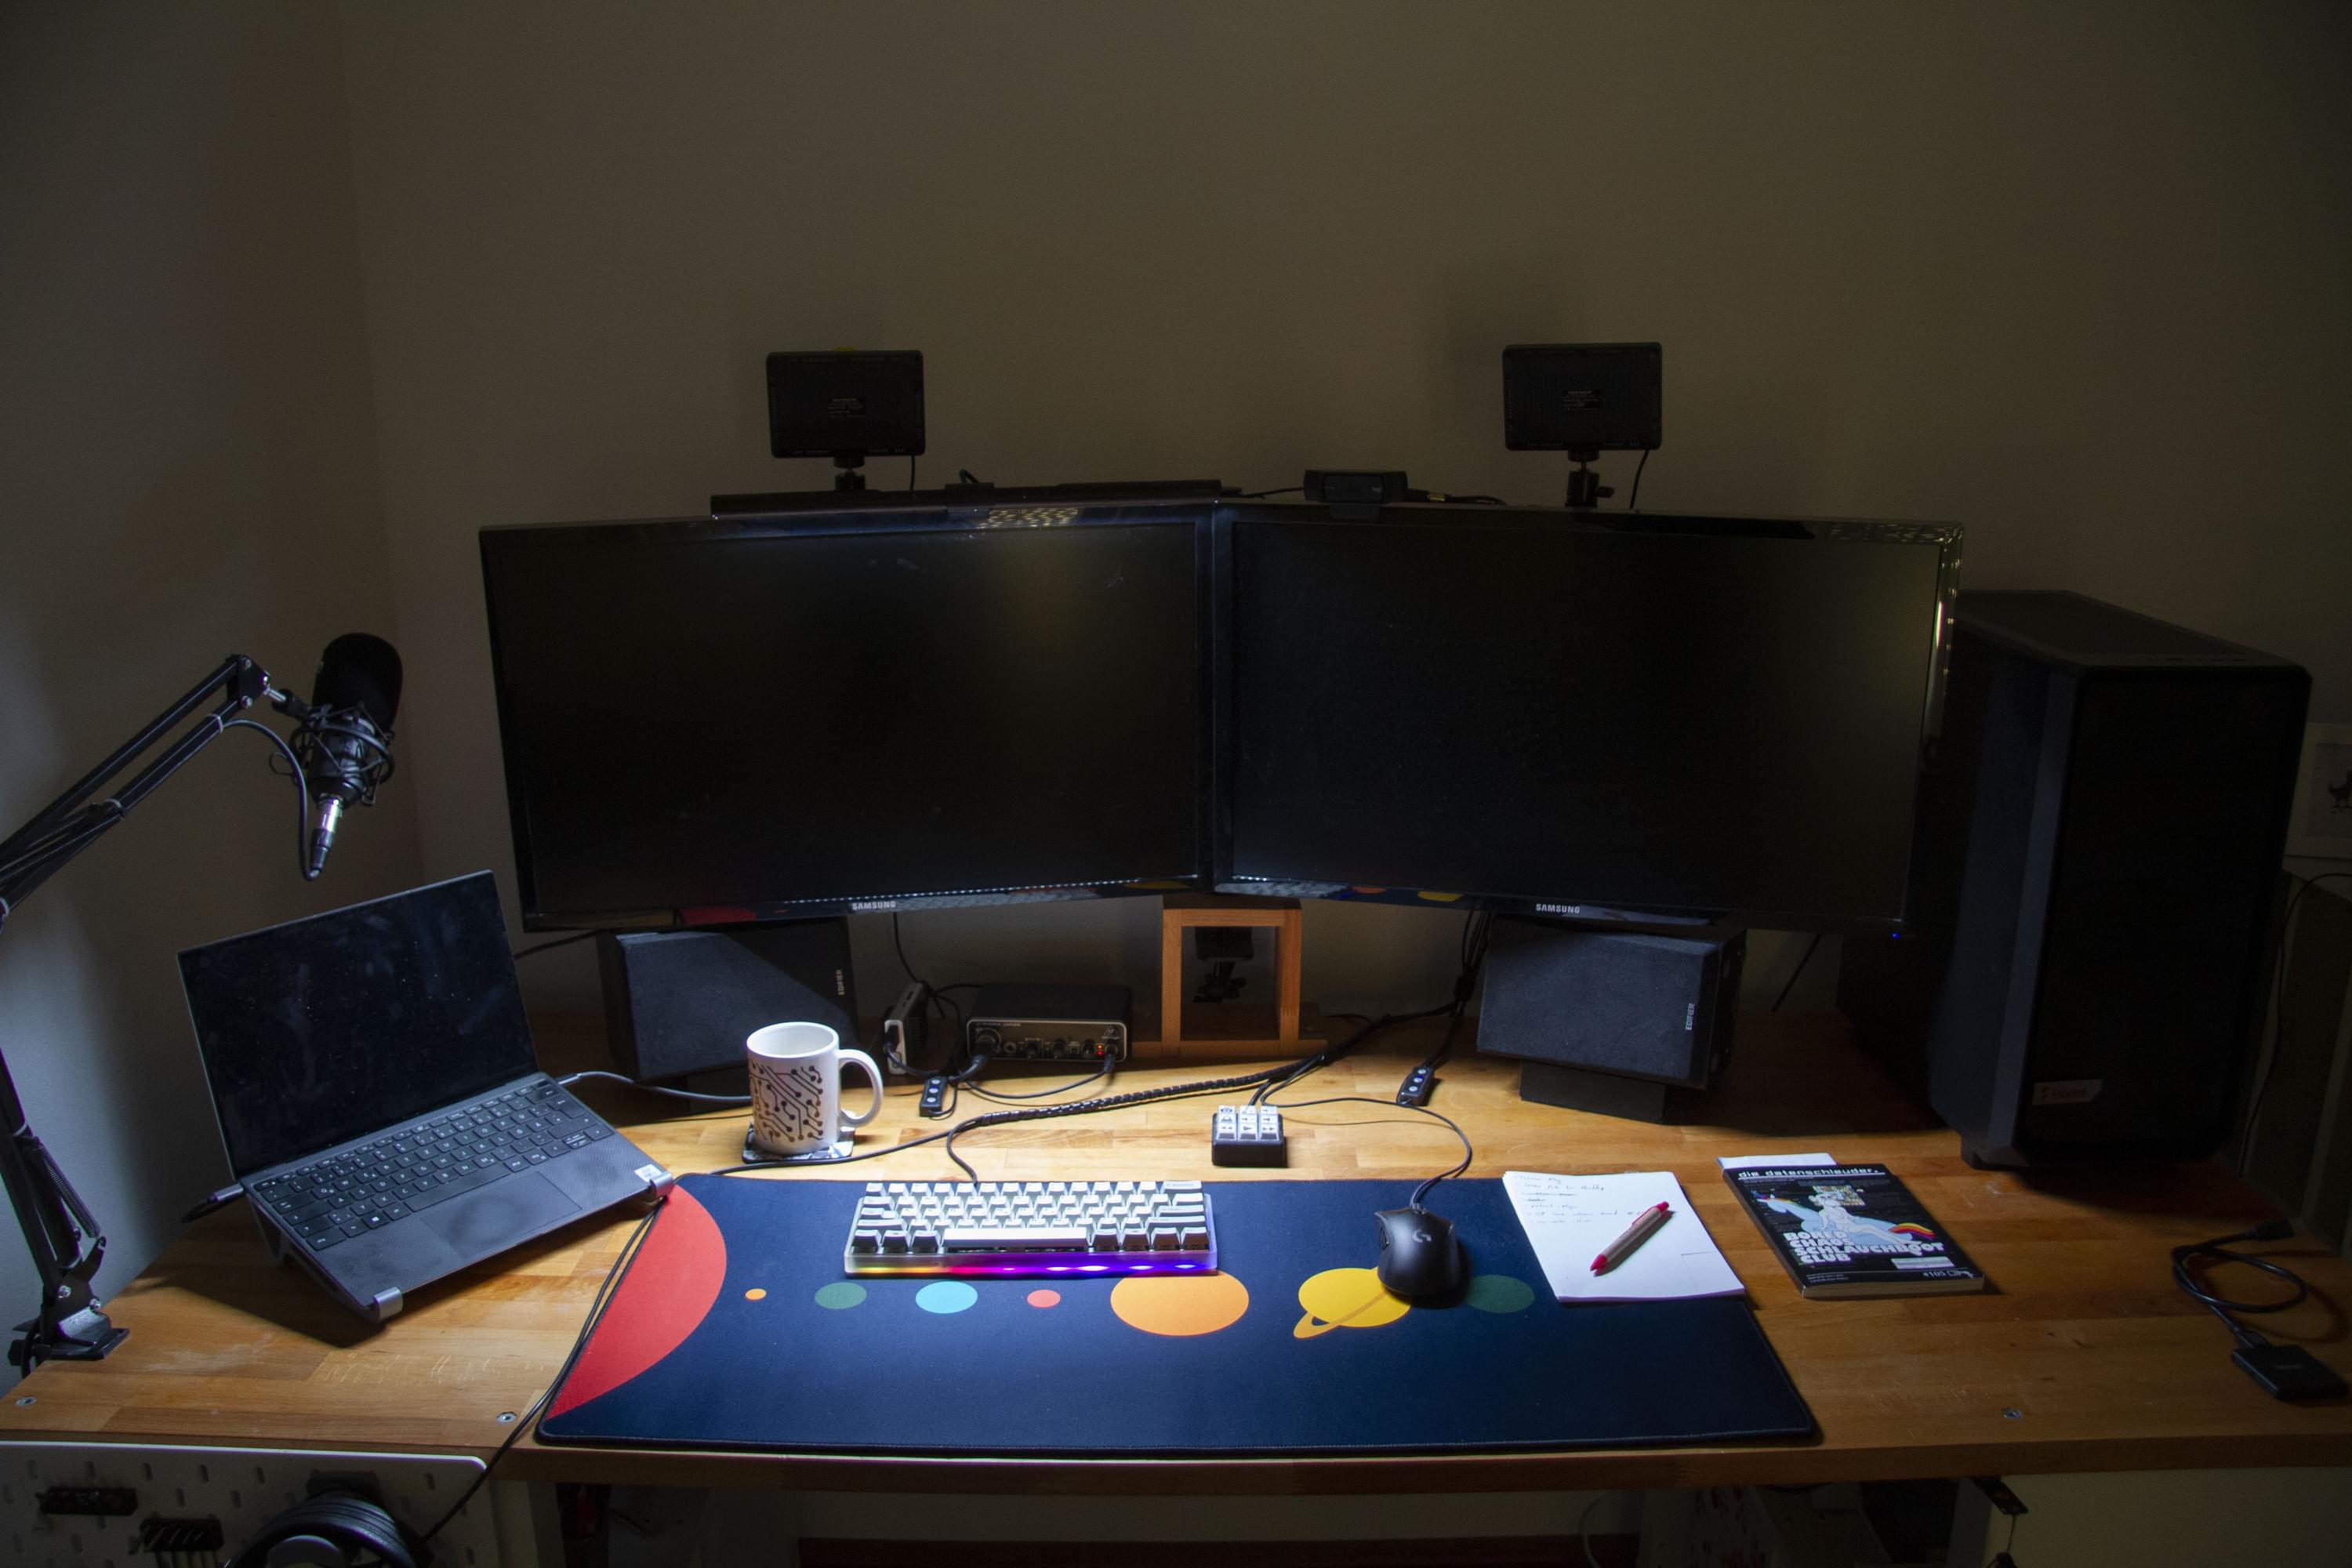 Foto von vorne von meinem Schreibtisch im abgedunkelten Zimmer. Links steht ein Laptop, dann zwei große Monitore, dann ein Desktop gehäuse. Die Screenbar hängt auf dem linken Monitor und beleuchtet den Schreibtisch. Auf dem Schreibtisch liegt eine blaue Deskmat mit bunten Planeten und darauf ein kleines graues Keyboard, eine schwarze Maus und ein Notizzettel mit Kugelschreiber. Unter den Monitoren stehen 2 Boxen, eine Kaffeetasse und ein Audiointerface.